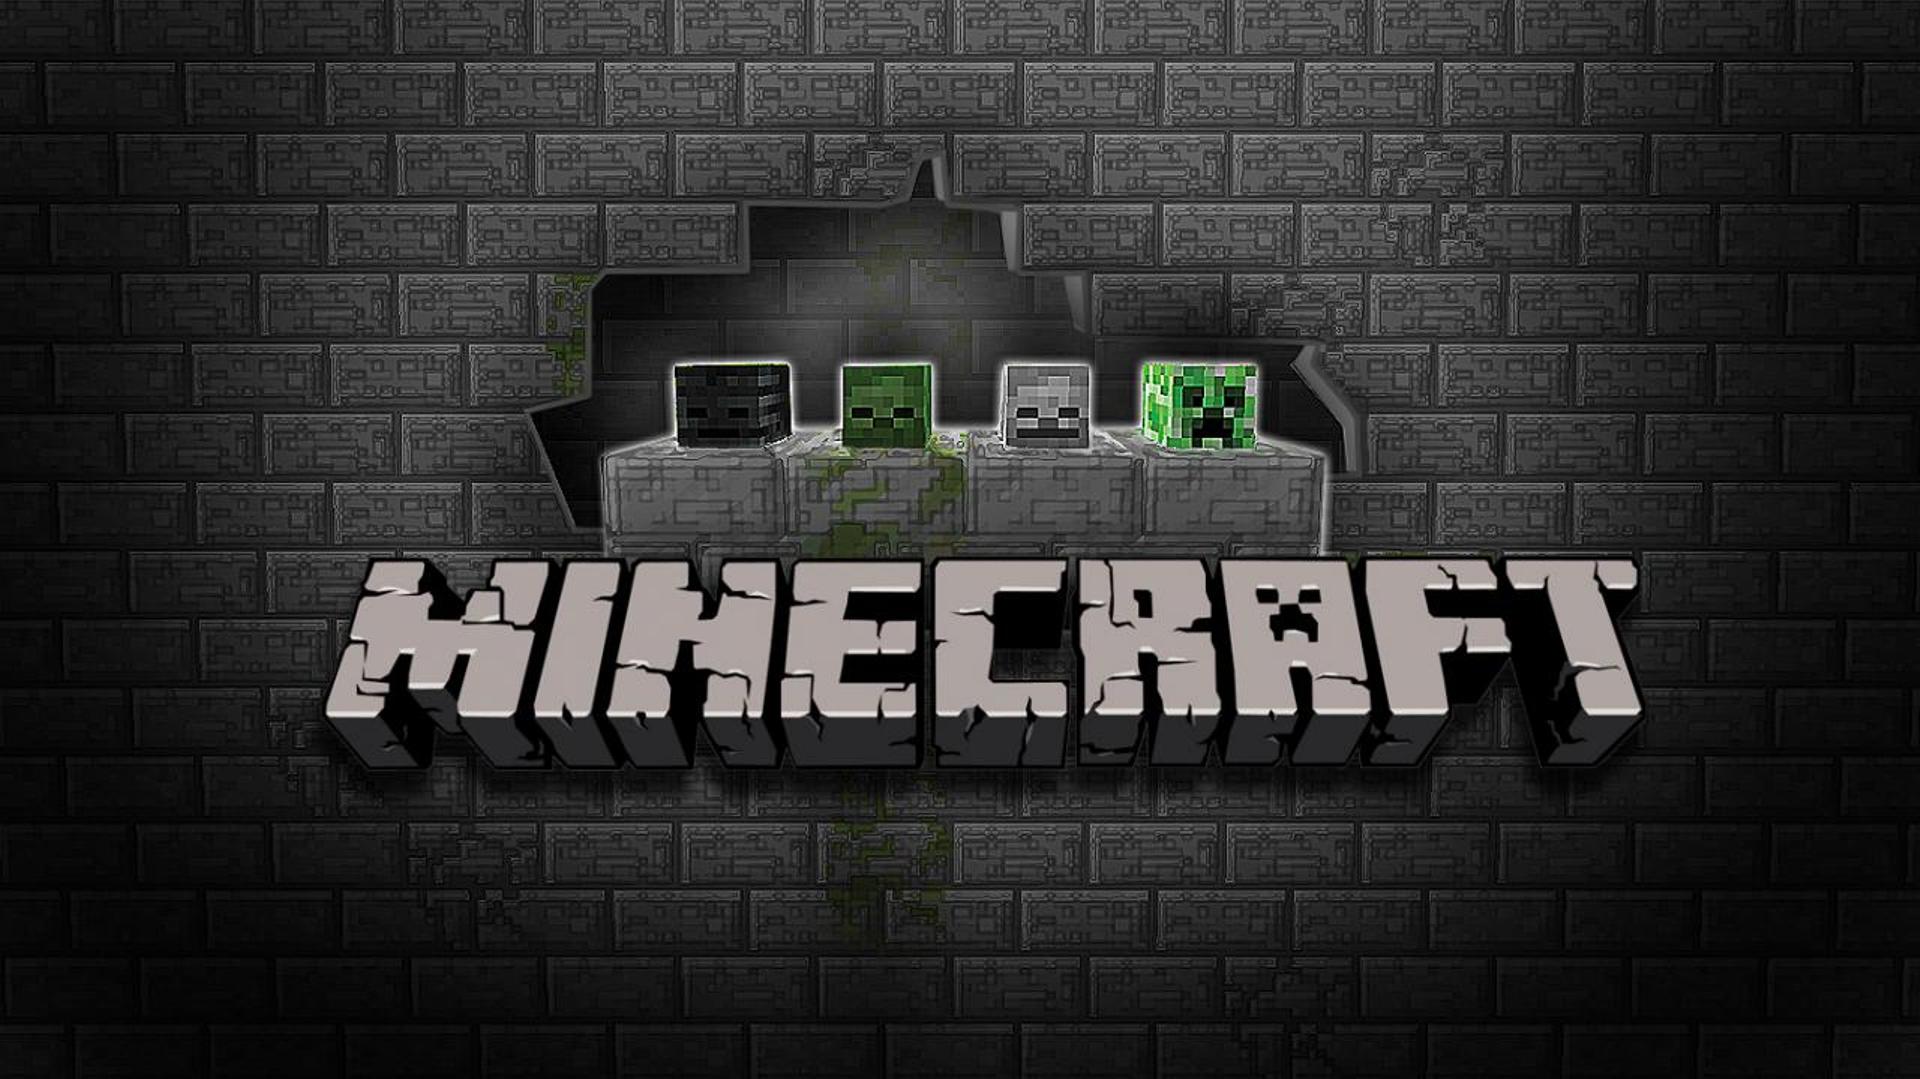 minecraft logo wallpaper